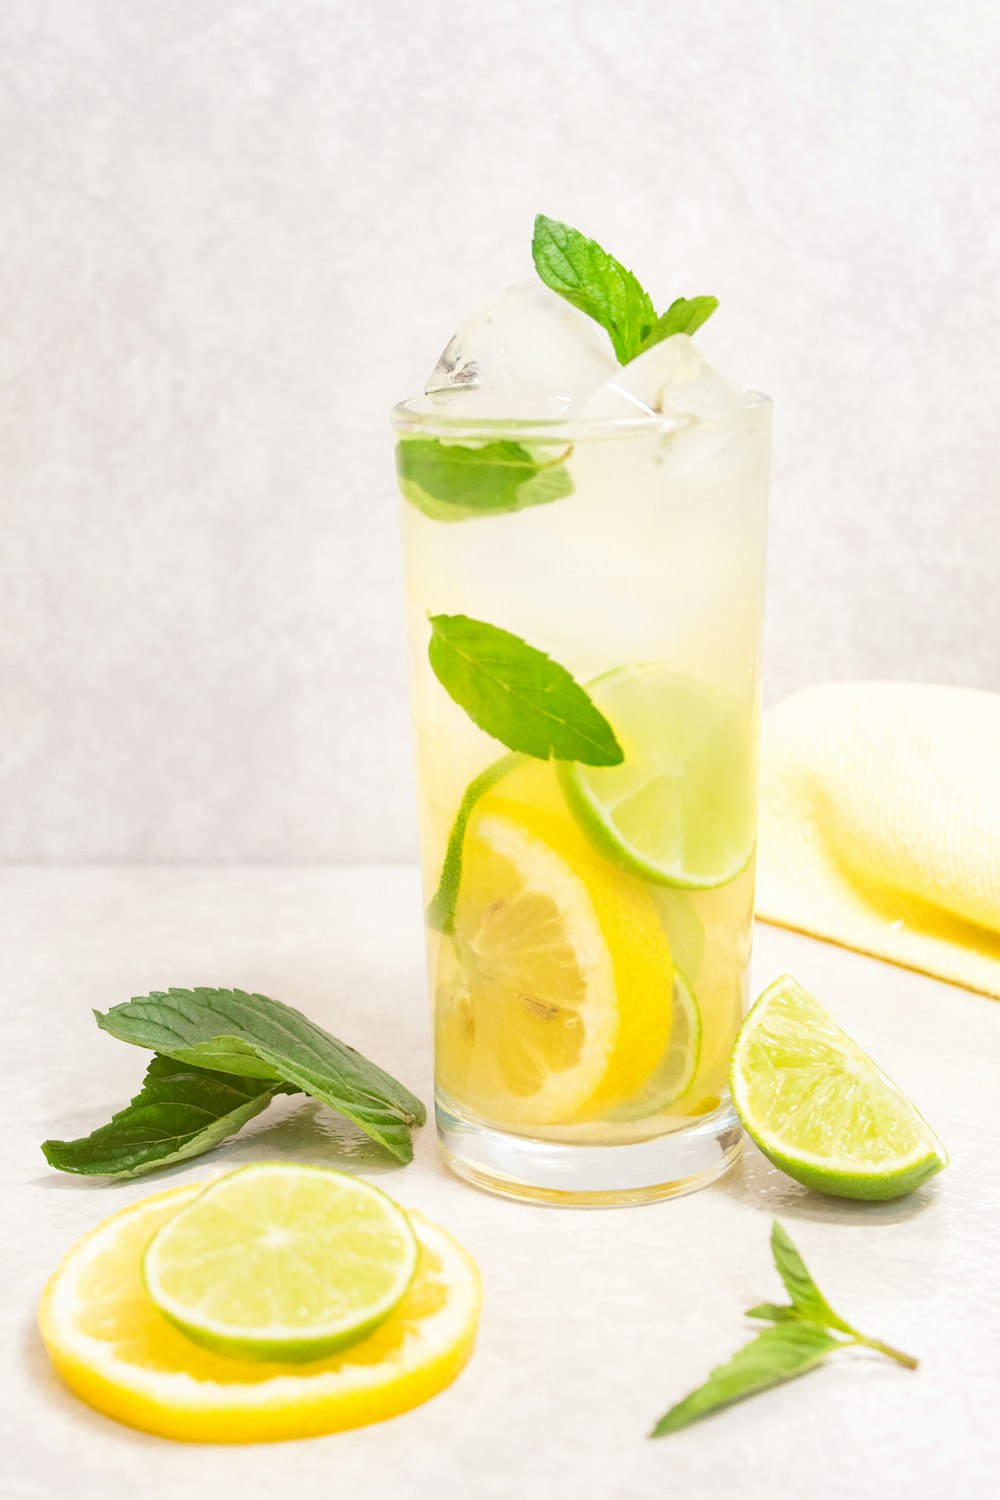 レモン汁入り透明なコップ